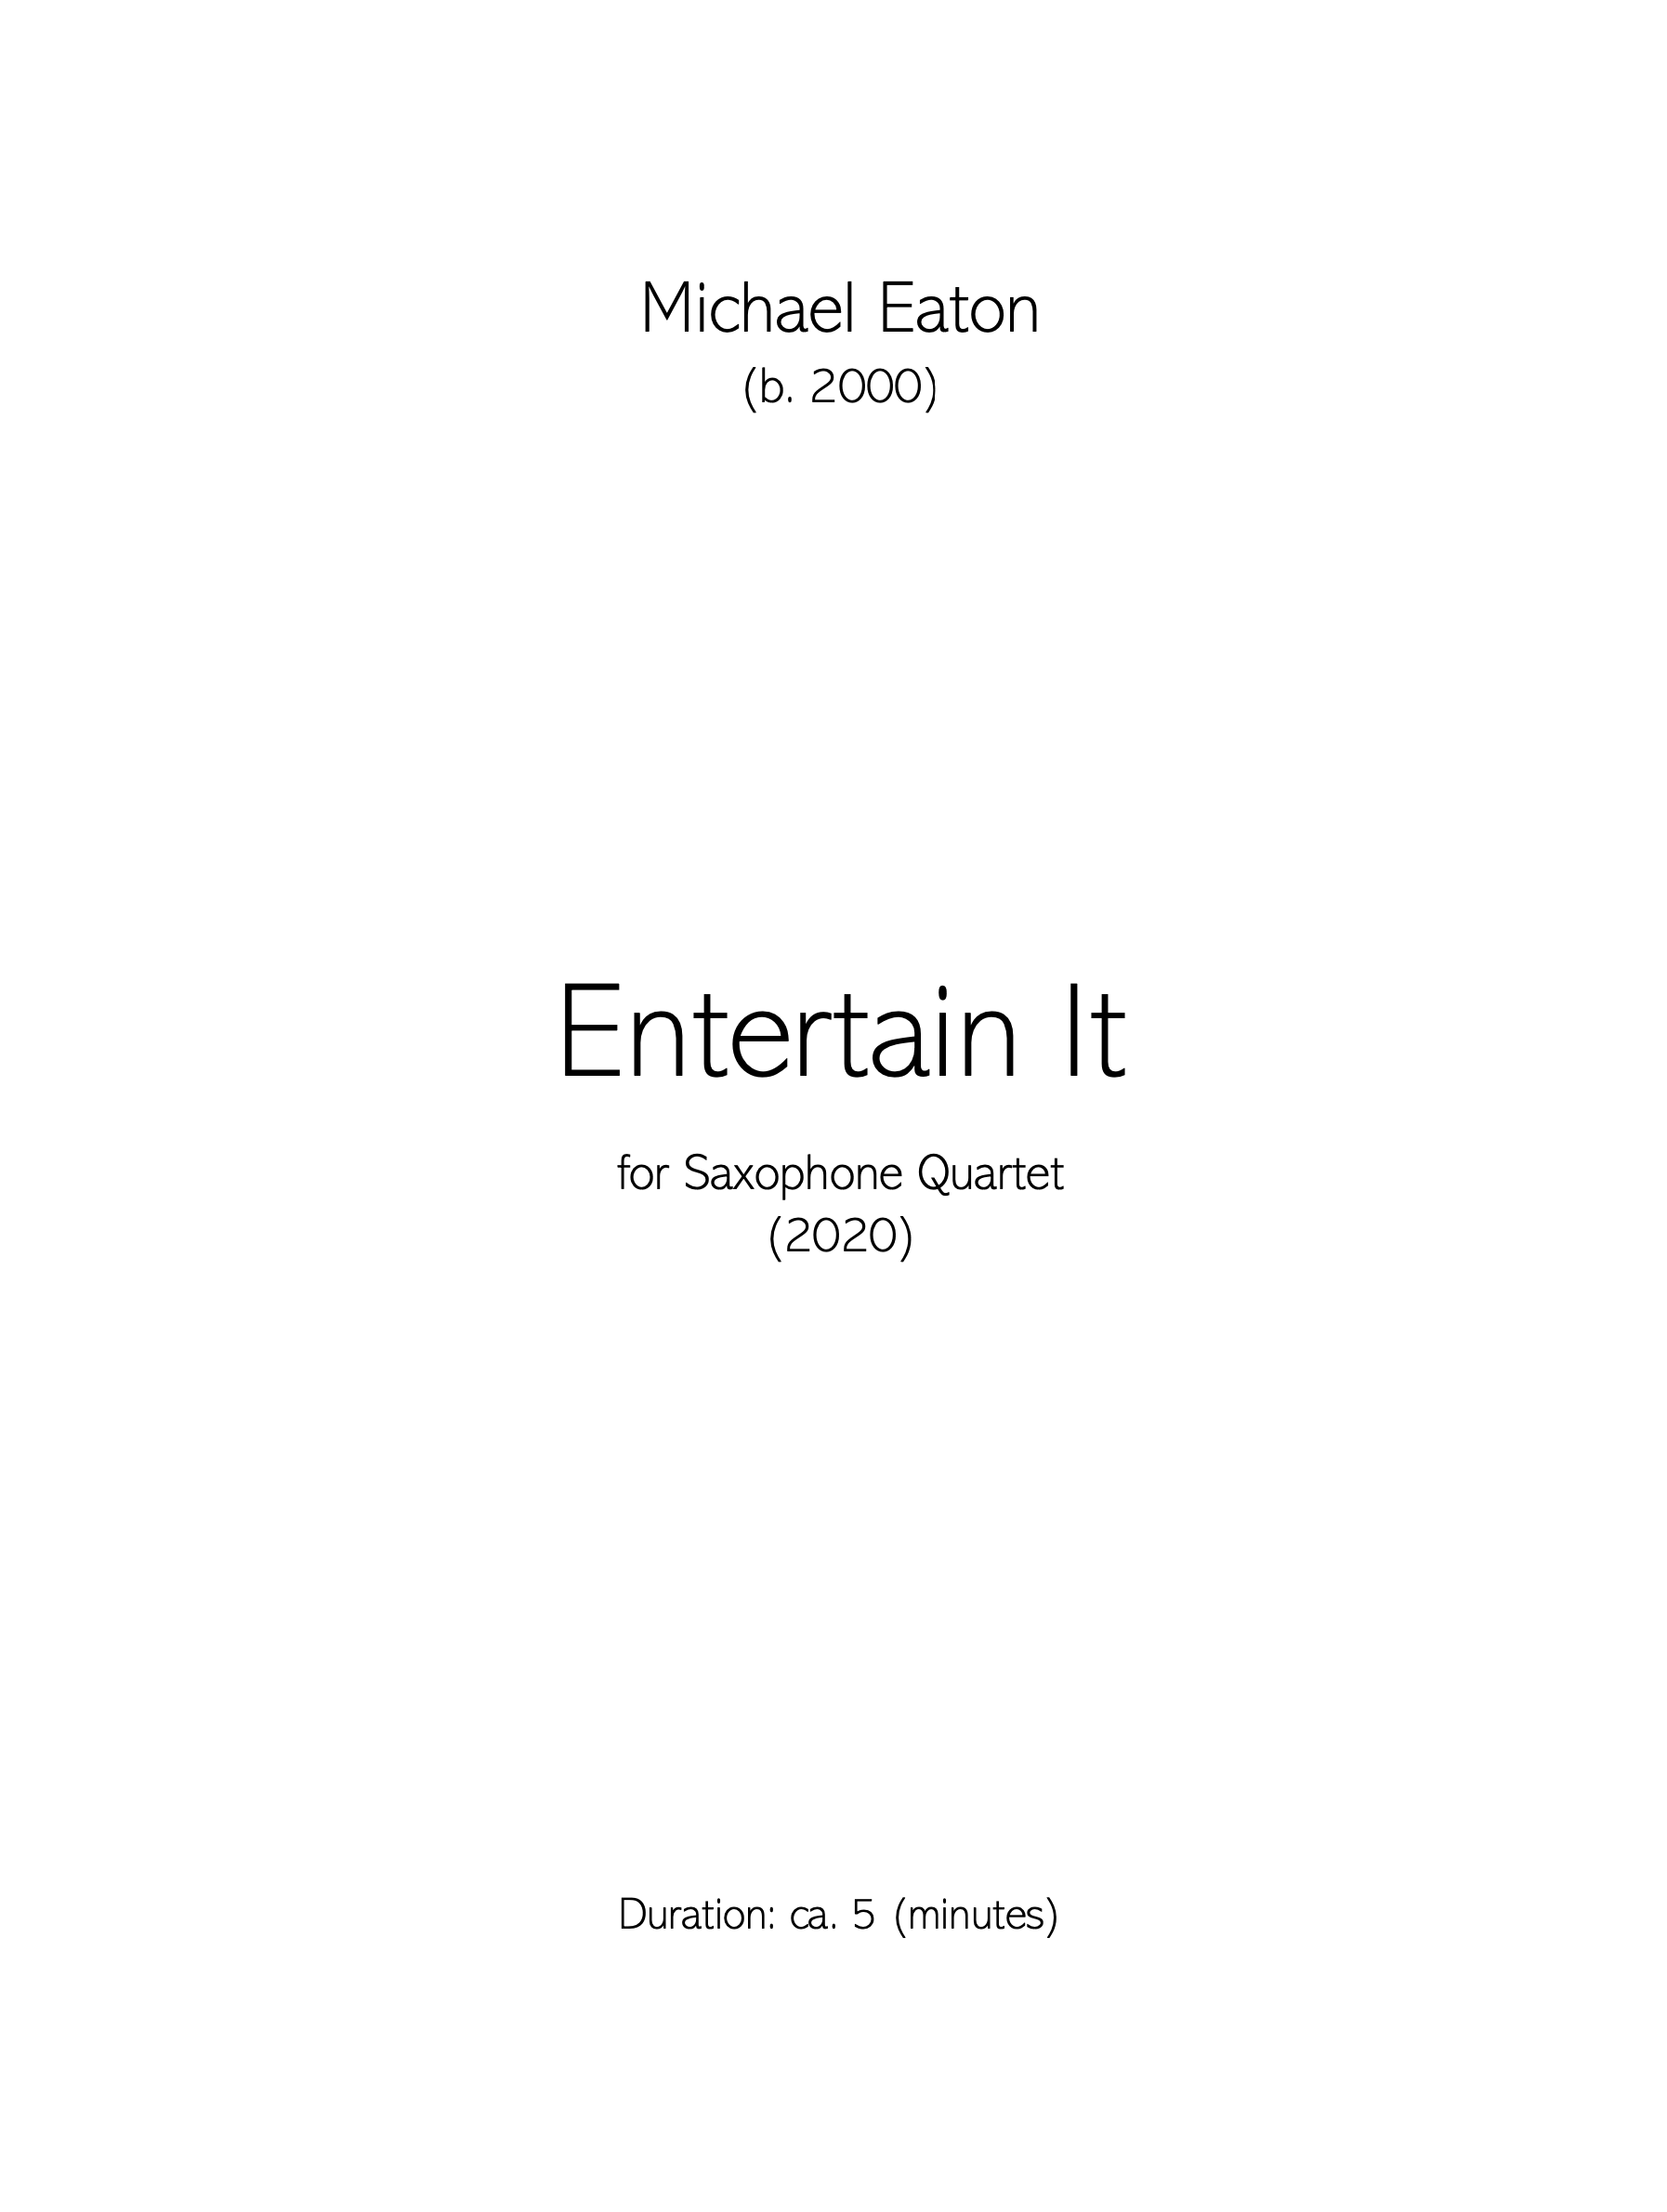 Entertain It by Michael Eaton